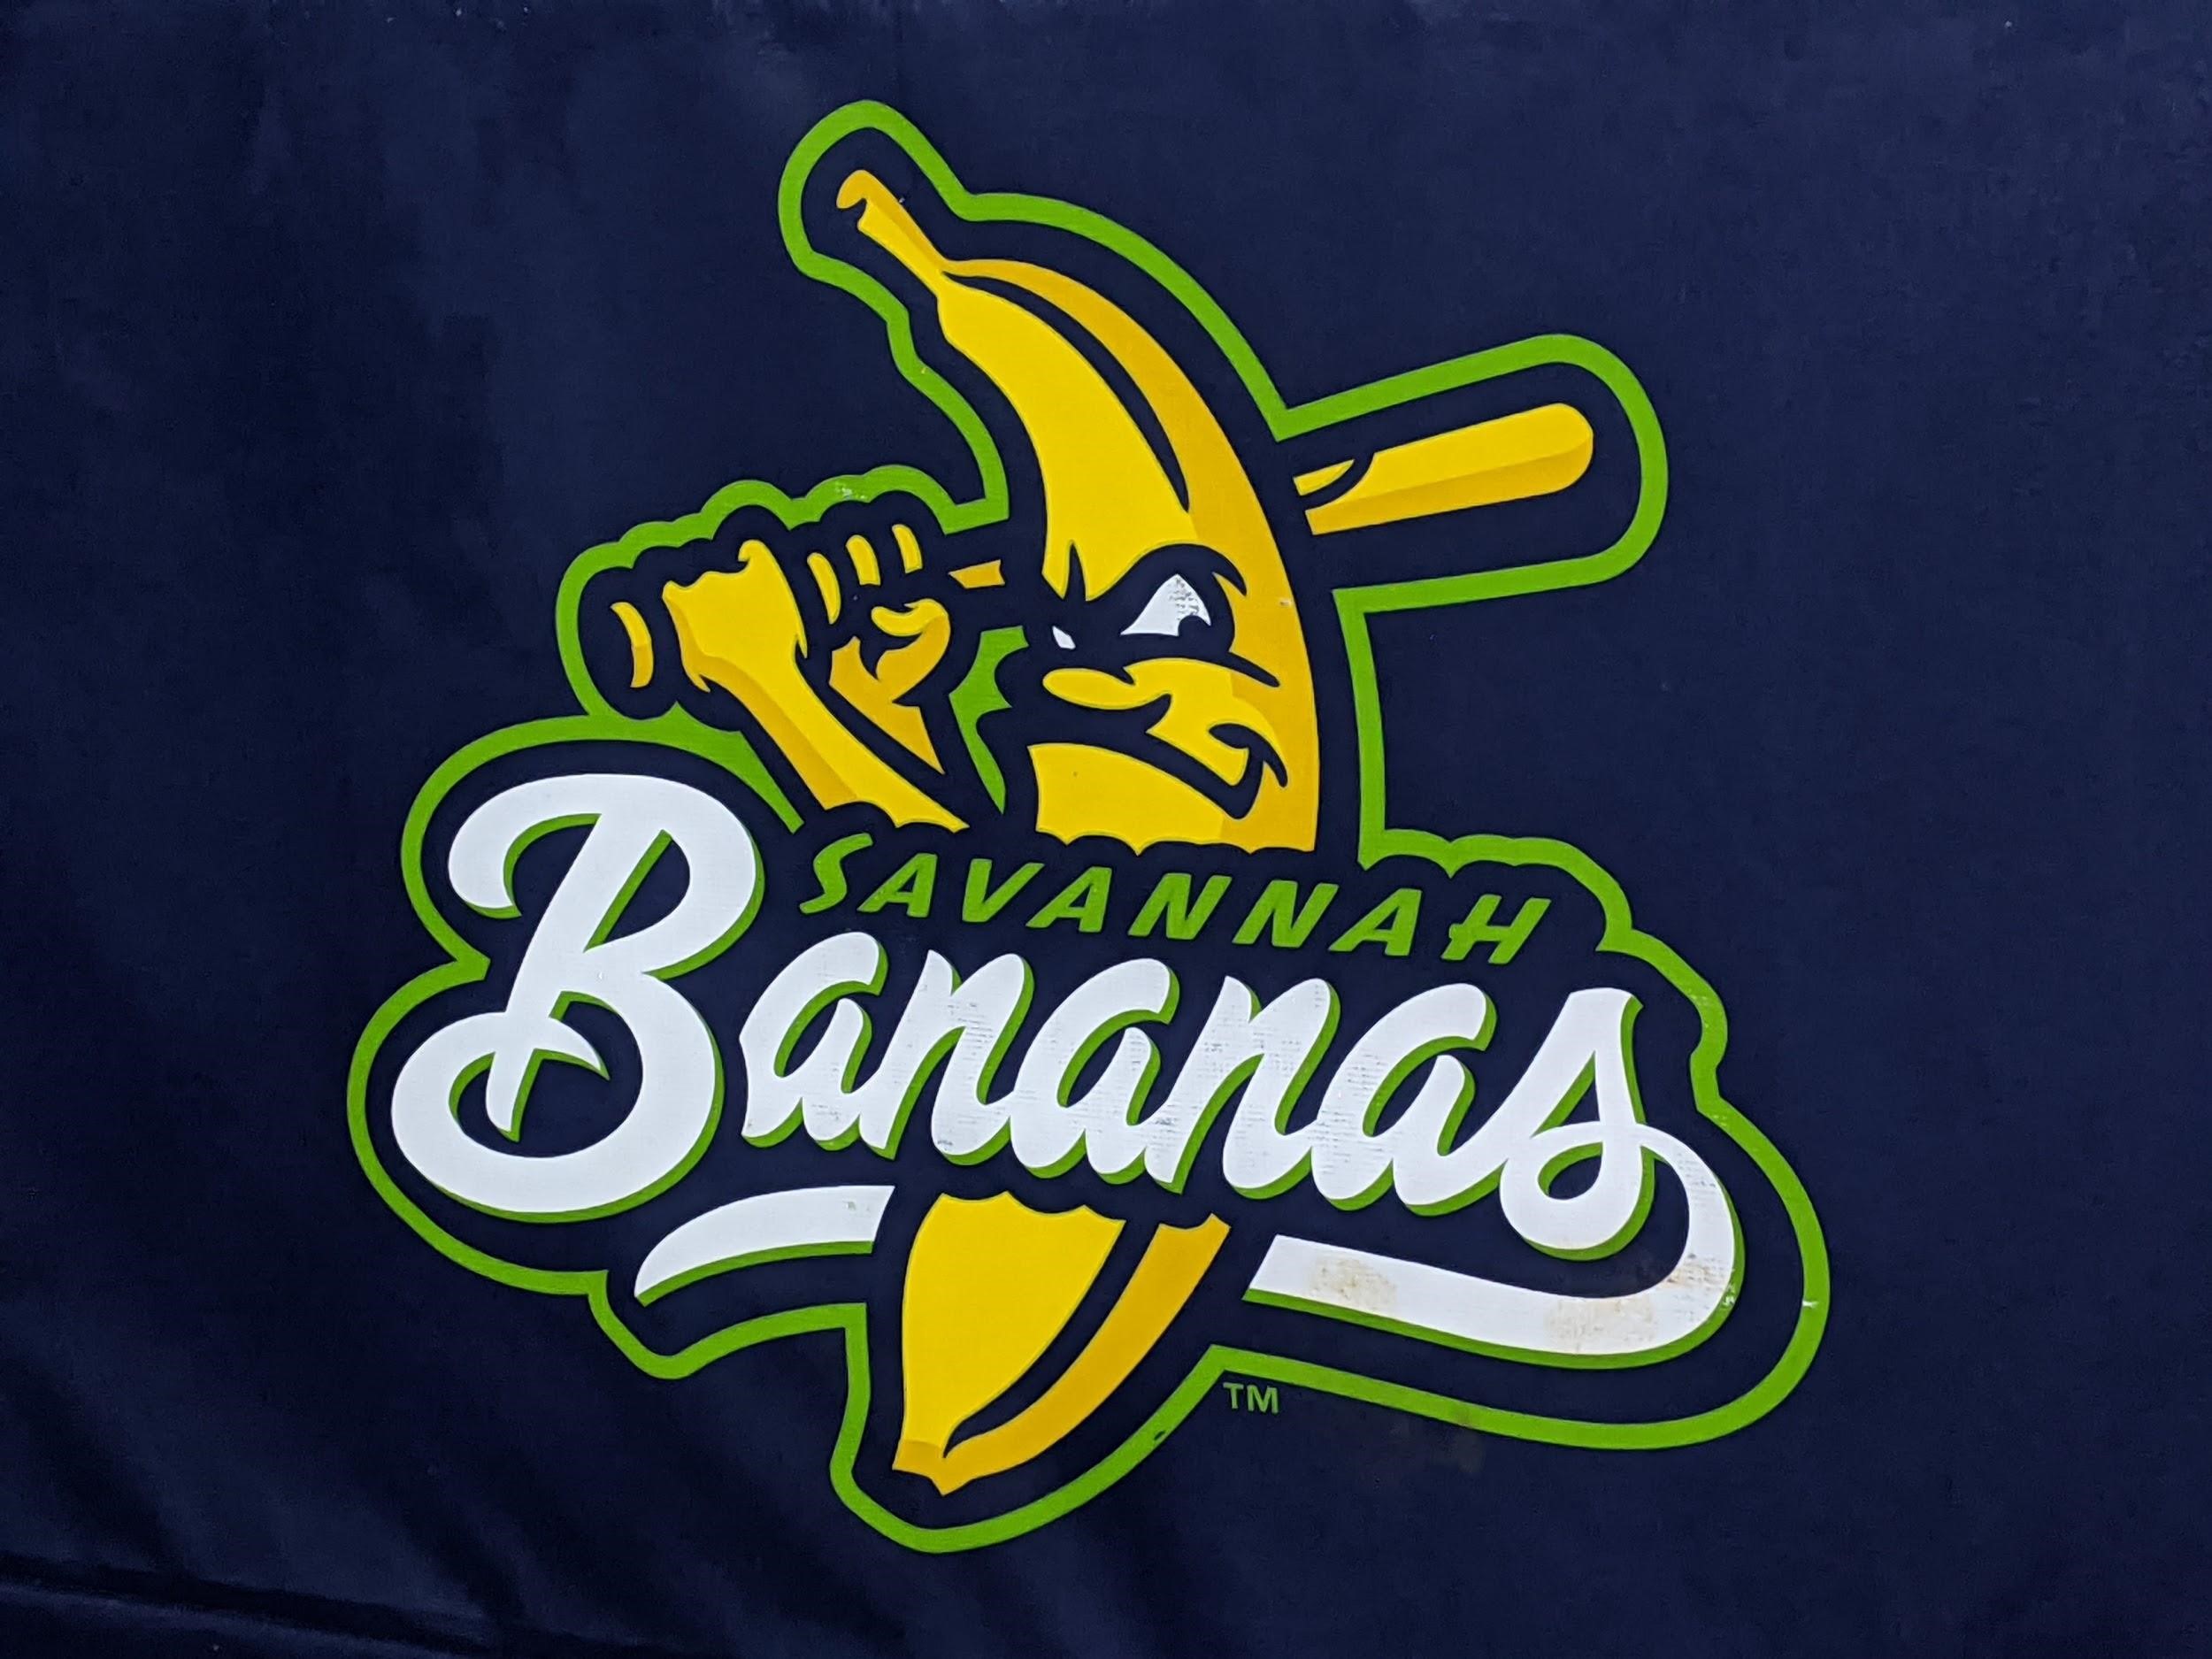 Banana Ball: Did I just see the future of baseball?